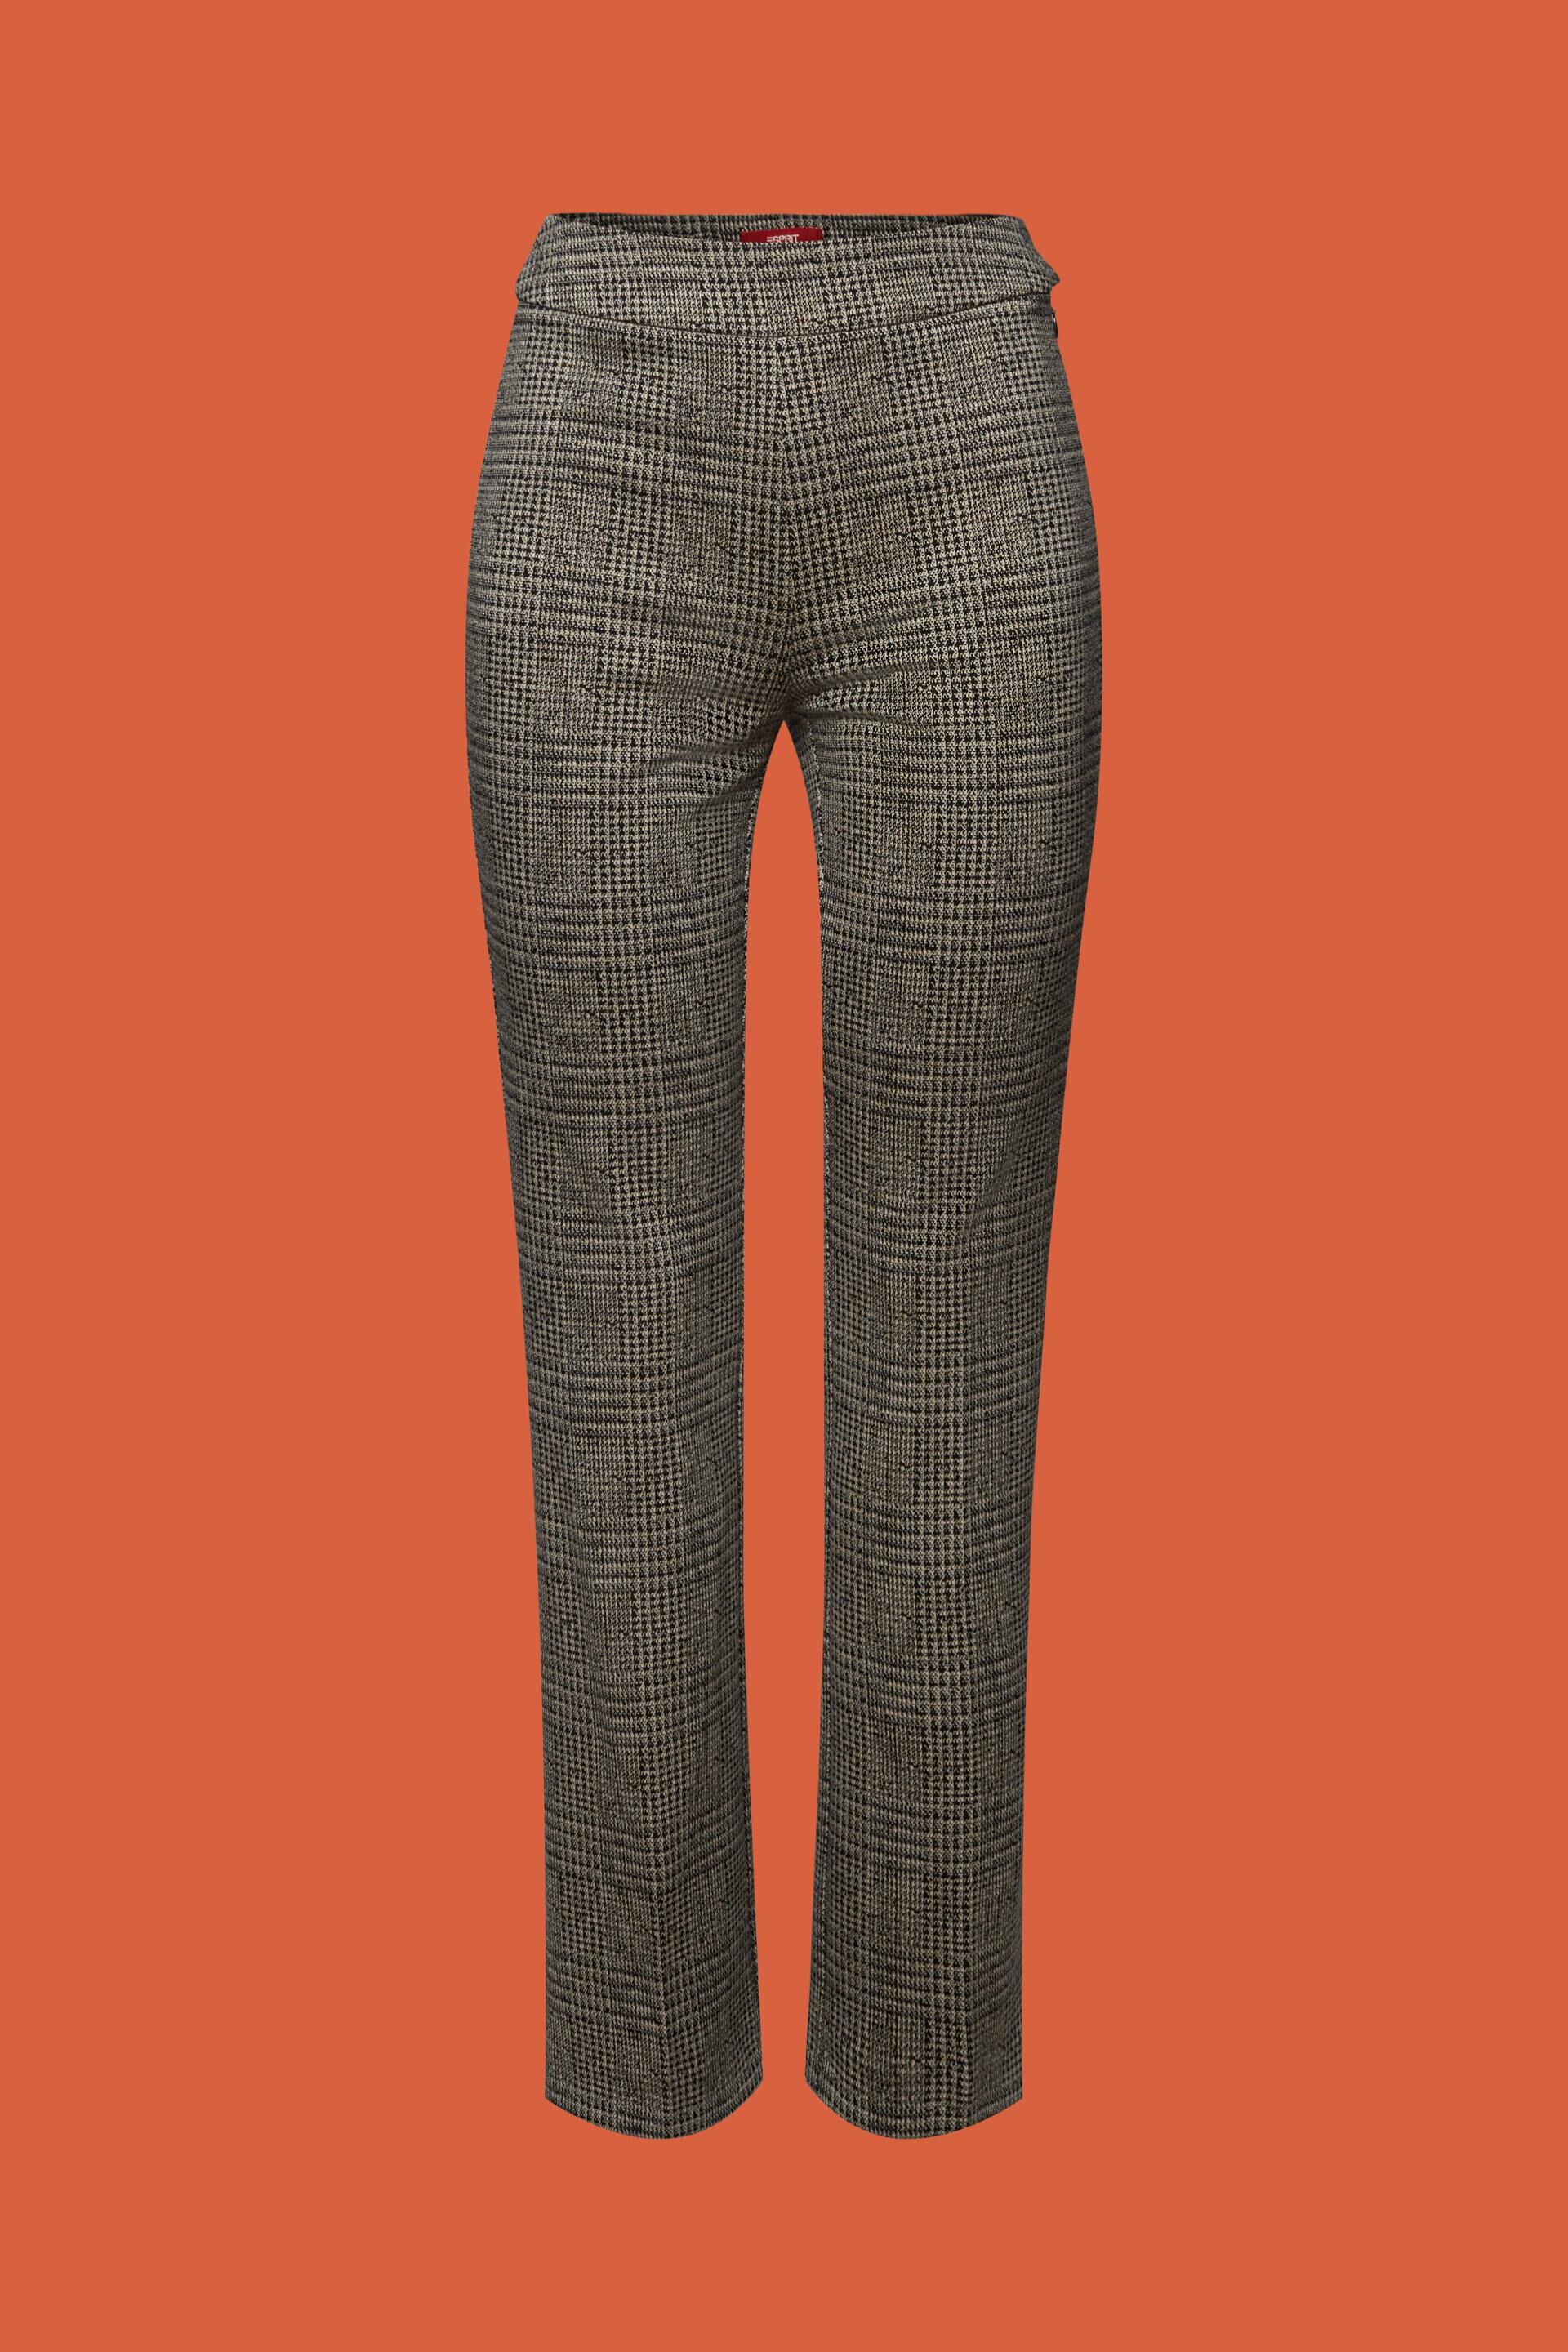 Patterned Slip-On Pants at shop our ESPRIT online 